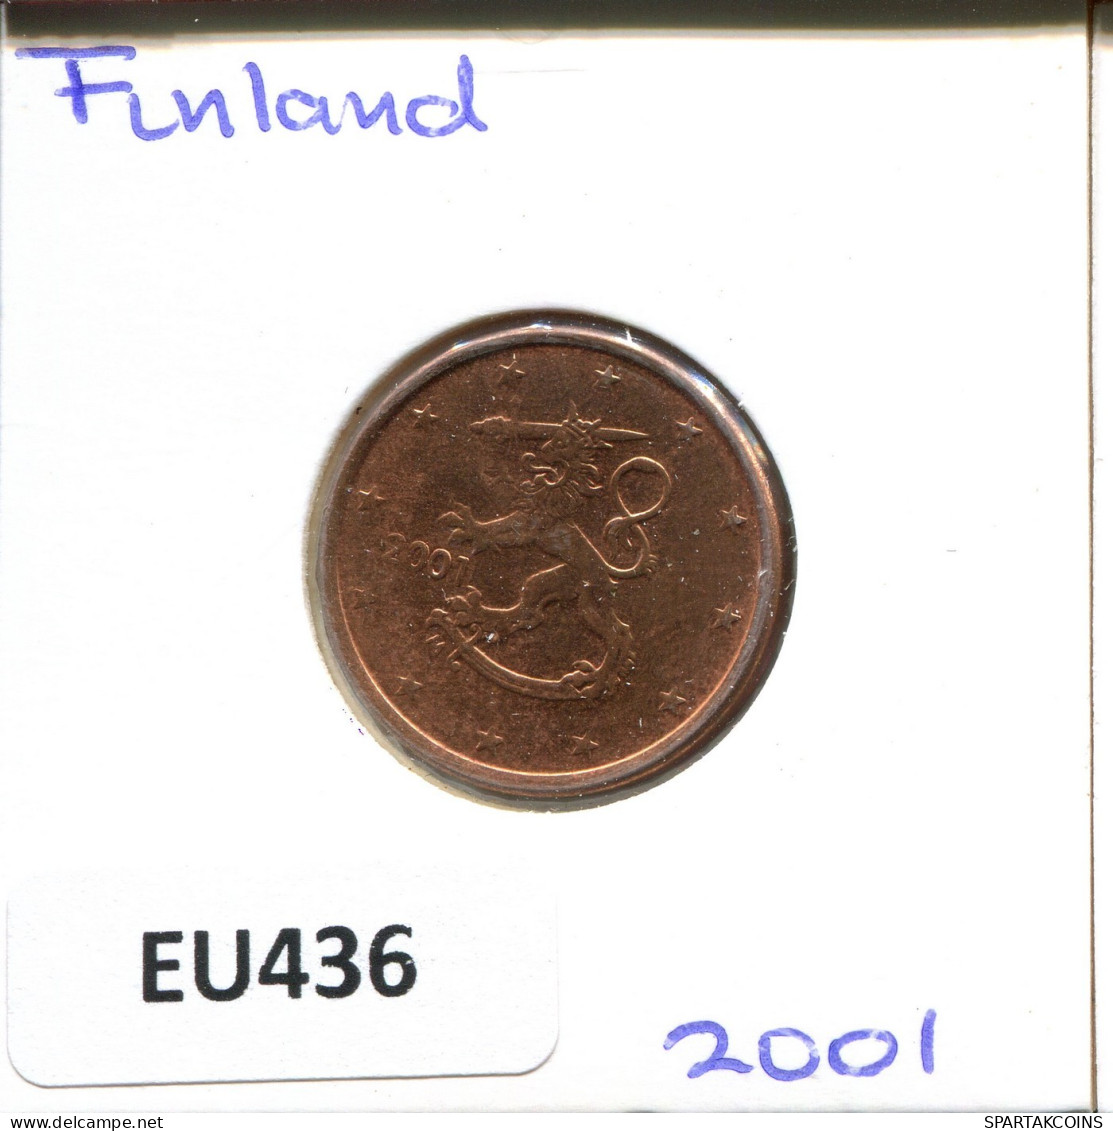 5 EURO CENTS 2001 FINNLAND FINLAND Münze #EU436.D.A - Finnland